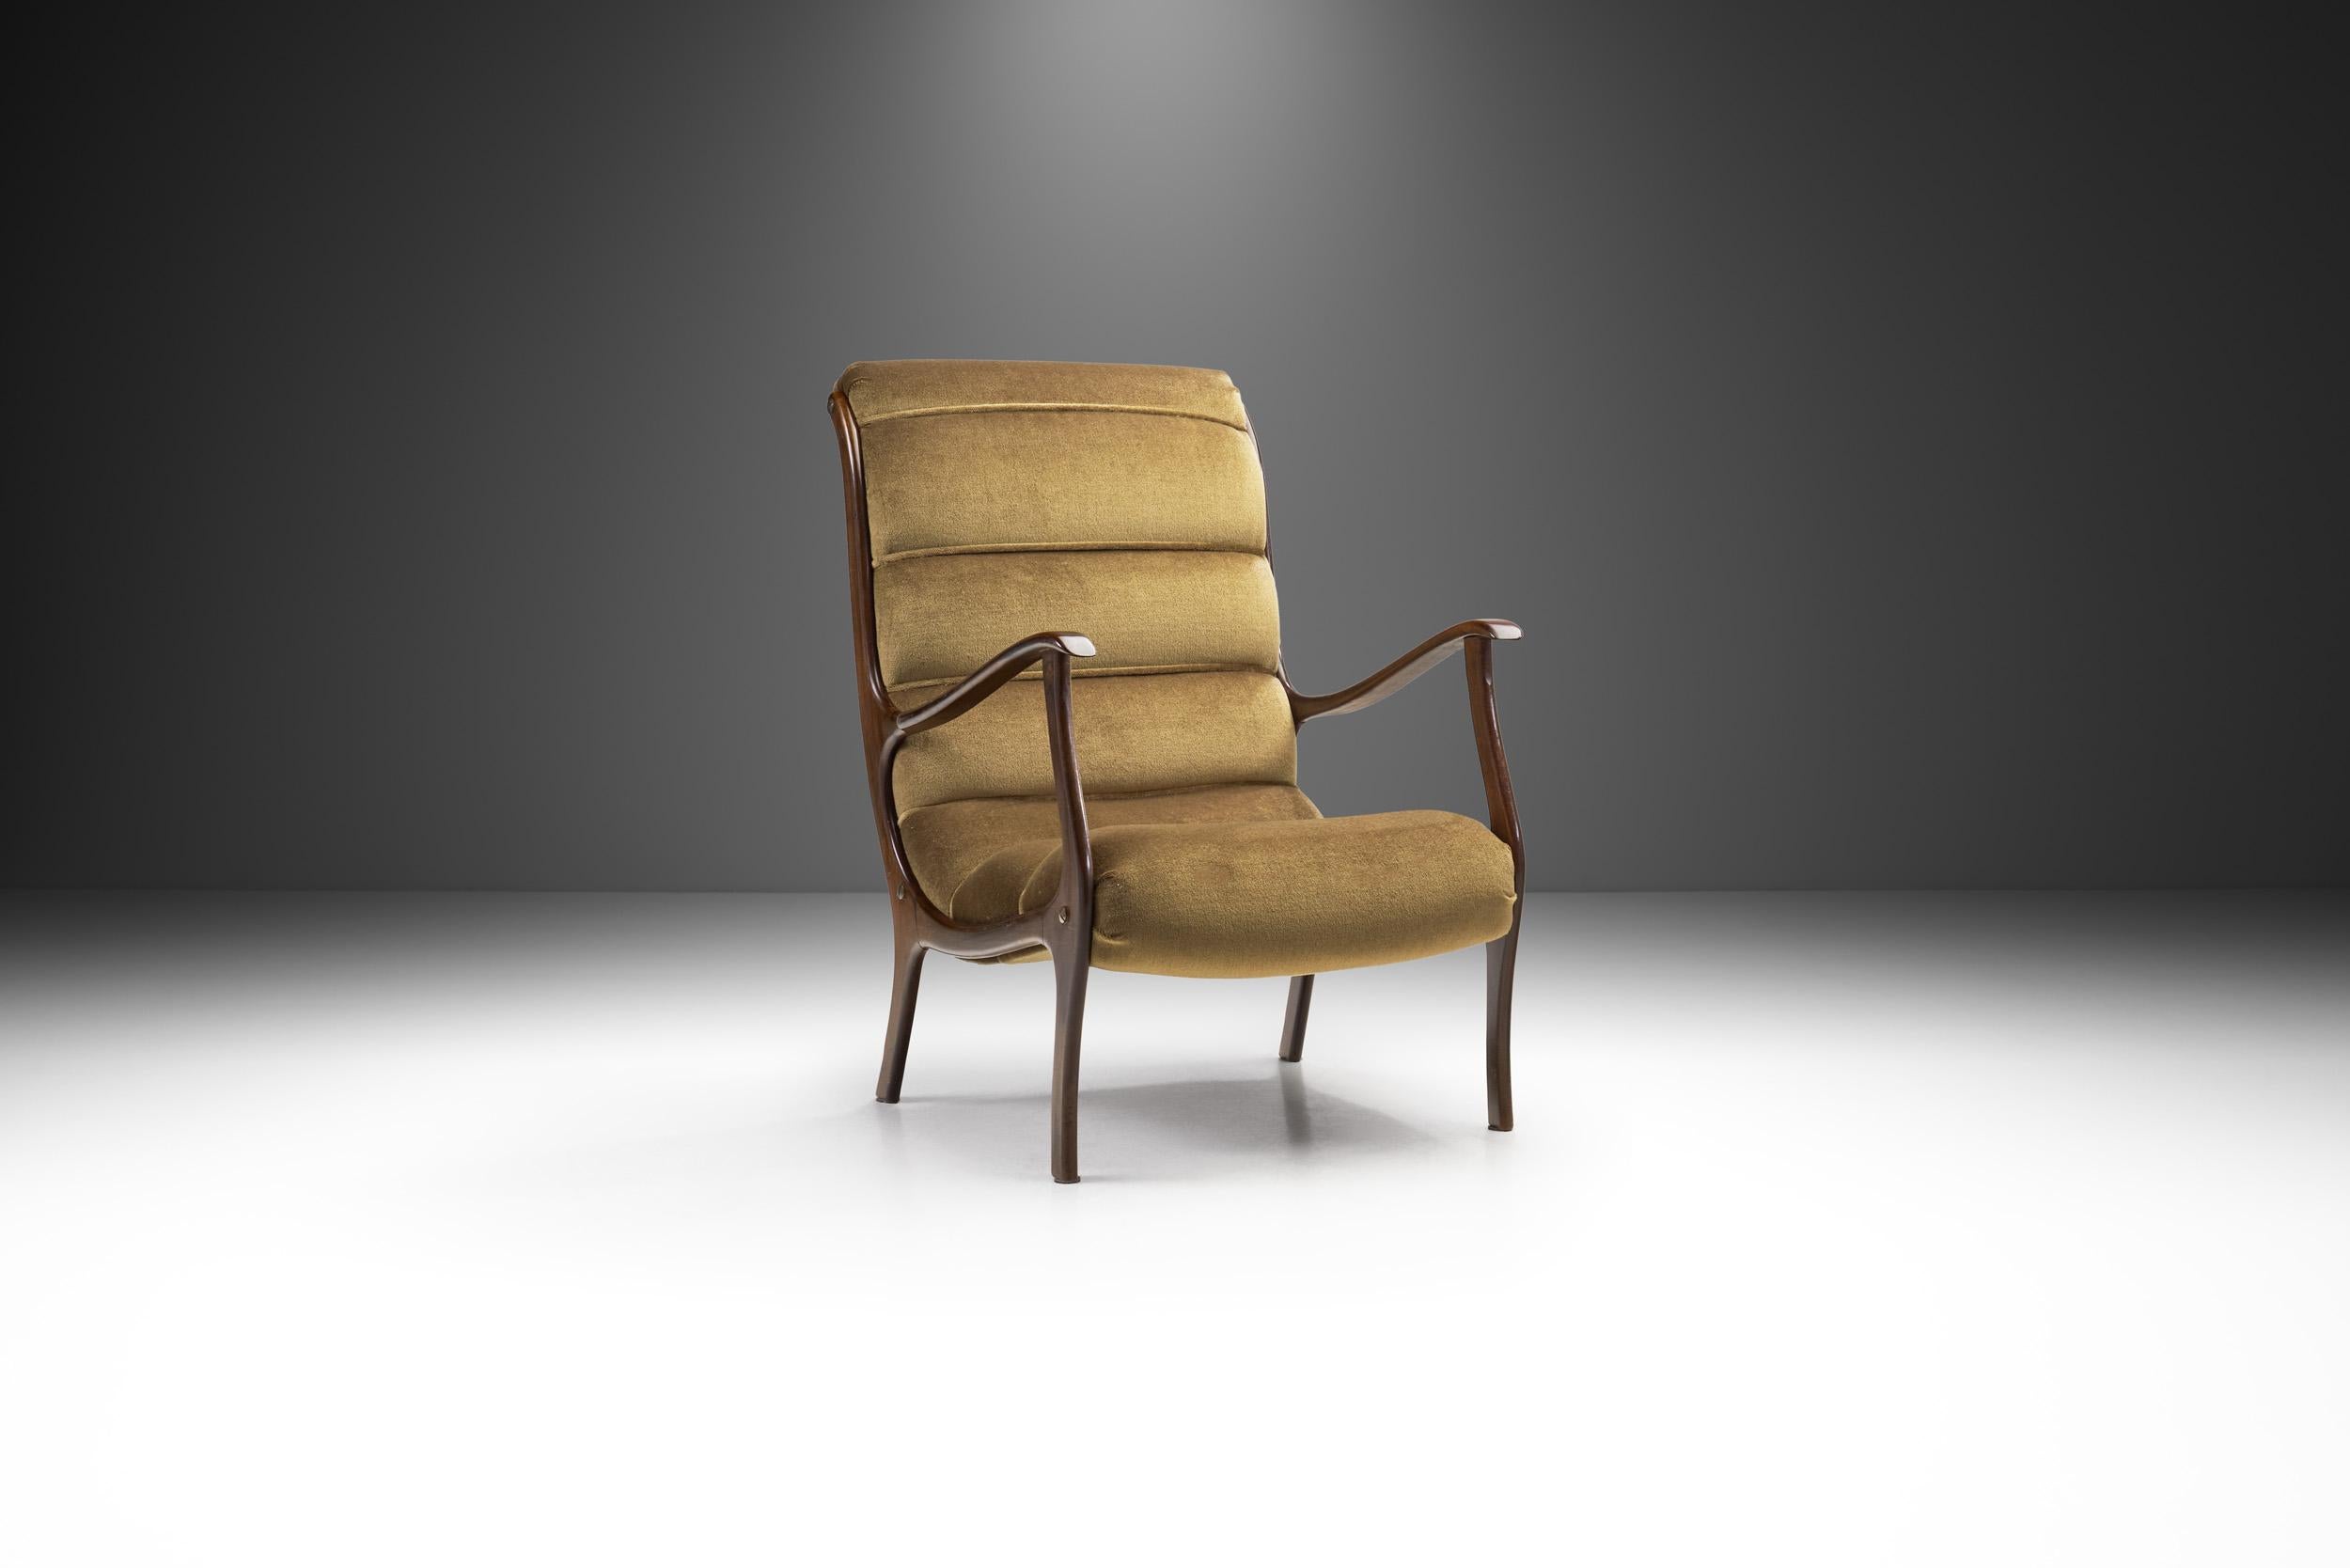 Comme le fauteuil Mitzi de 1958, ce modèle fait partie des chaises les plus connues du designer italien Ezio Longhi. Cette chaise longue nous ramène dans l'Italie de l'après-guerre, lorsque les formes libres des années 1950 et 1960, désormais